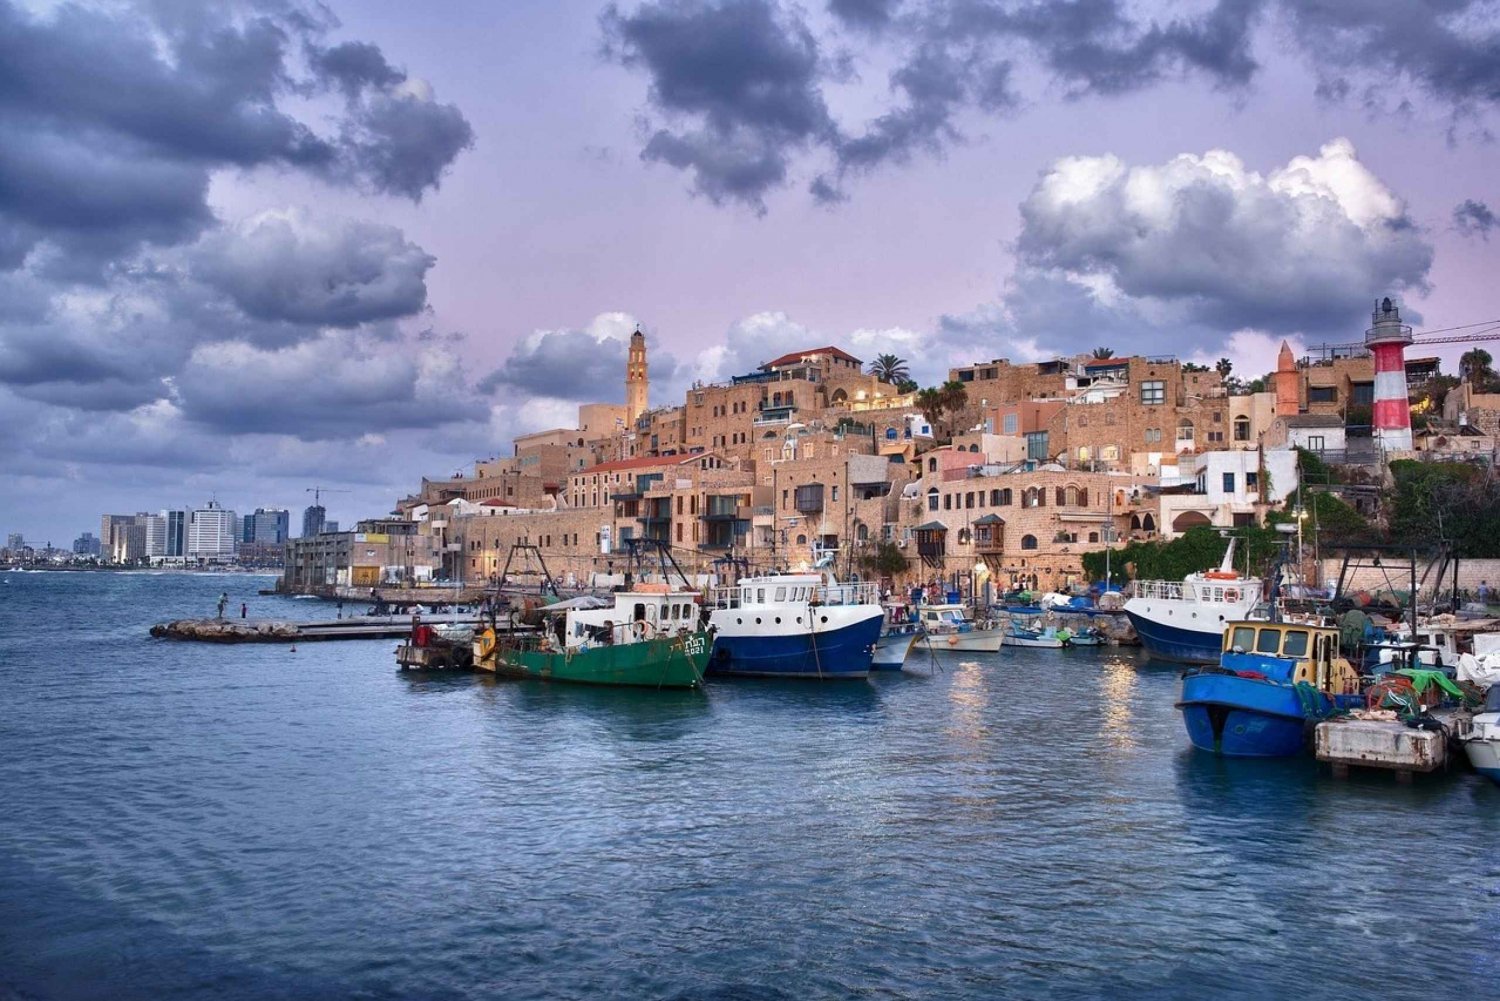 Tel Aviv: Jaffa-tur med en privat guide